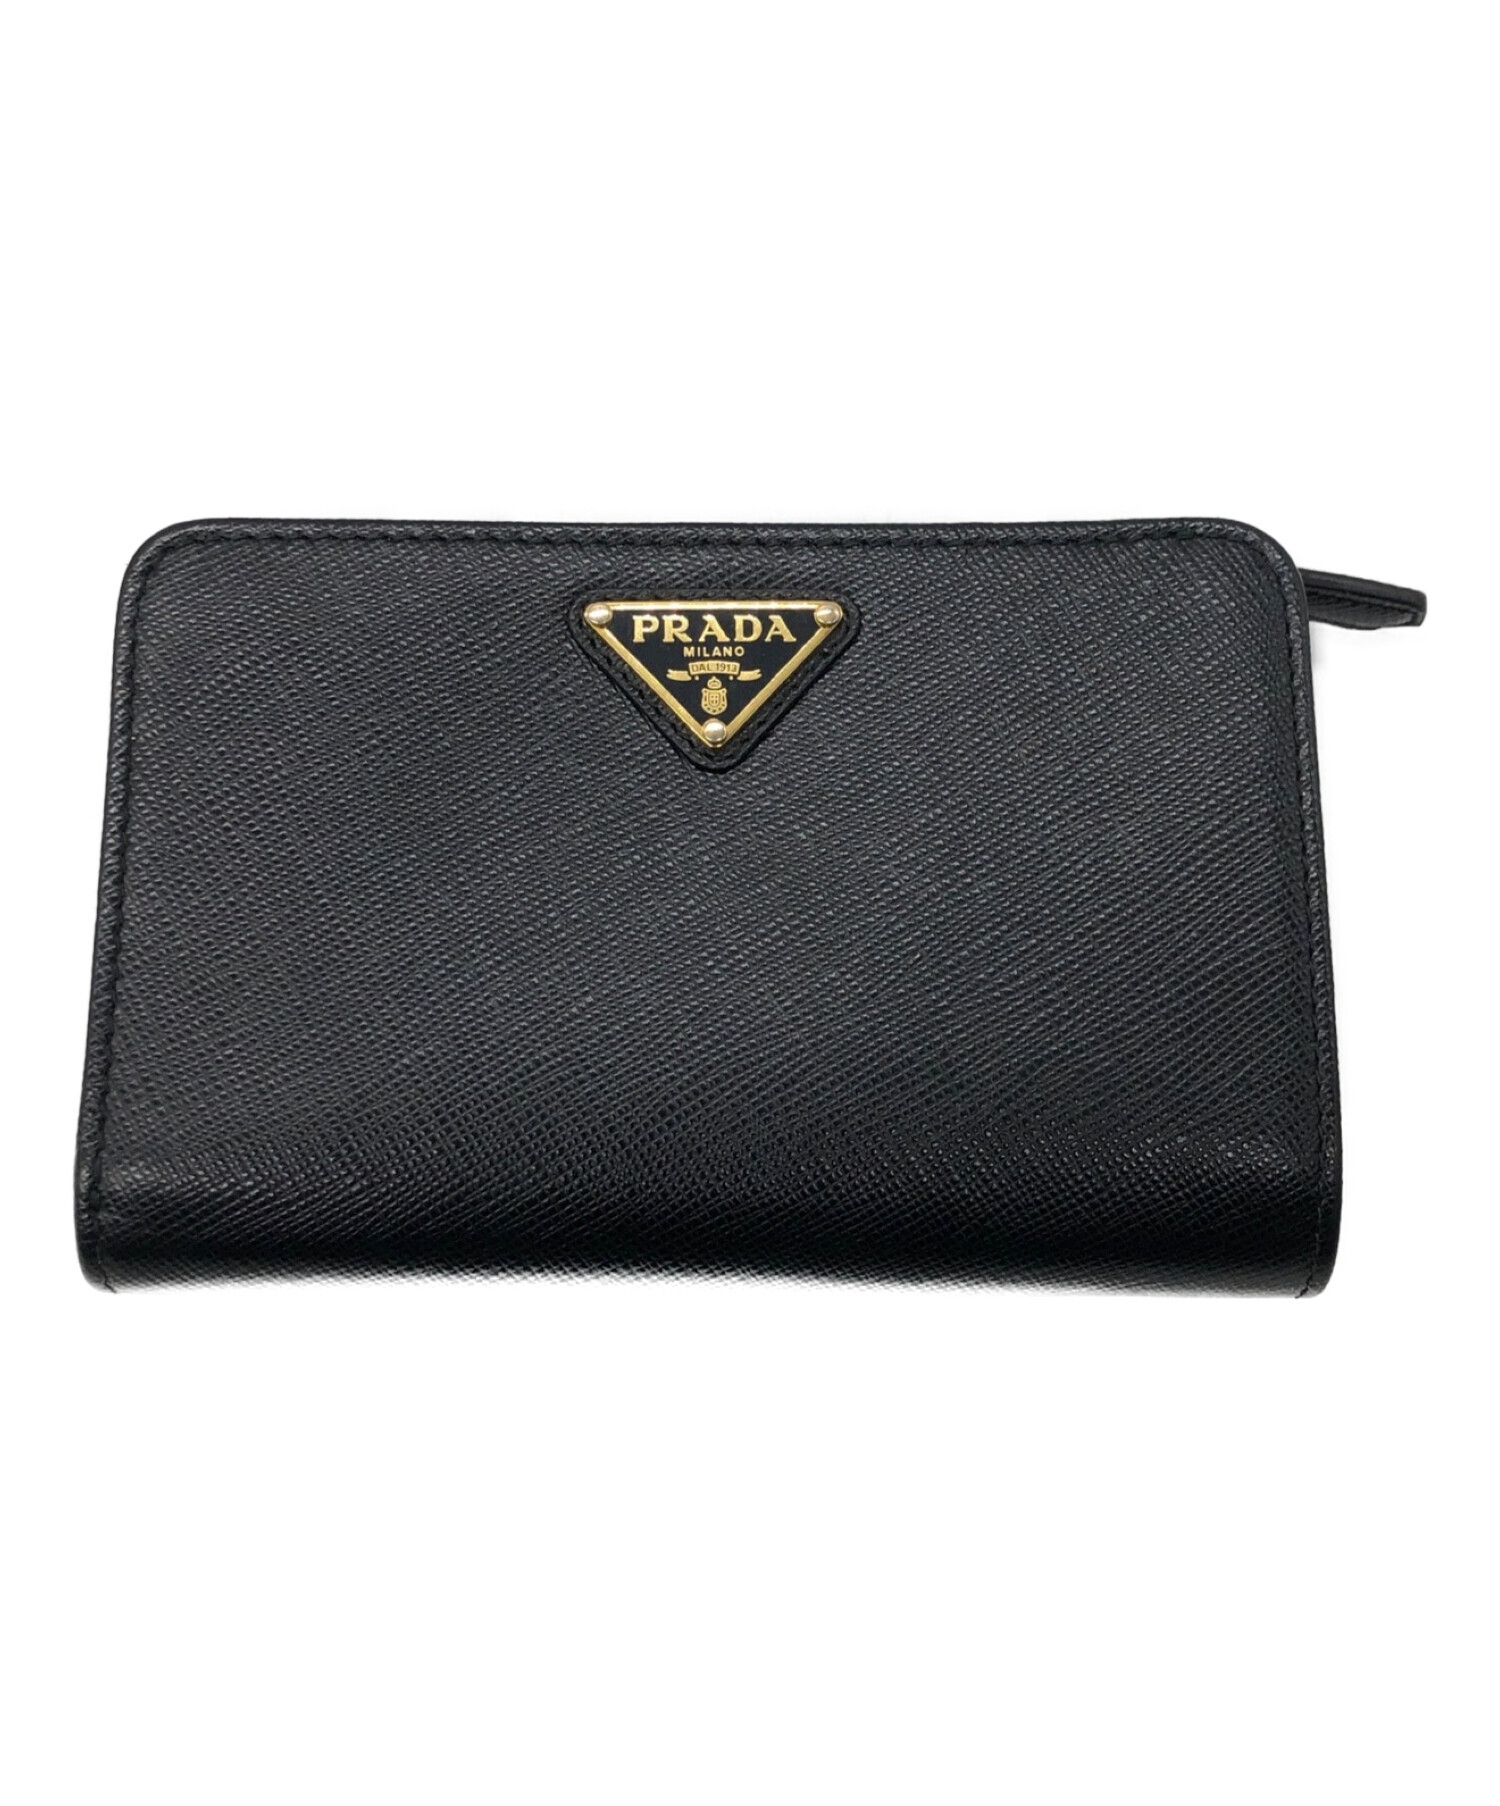 プラダ 三つ折り財布 ナイロン レザー 三角ロゴ カード付き ブラック